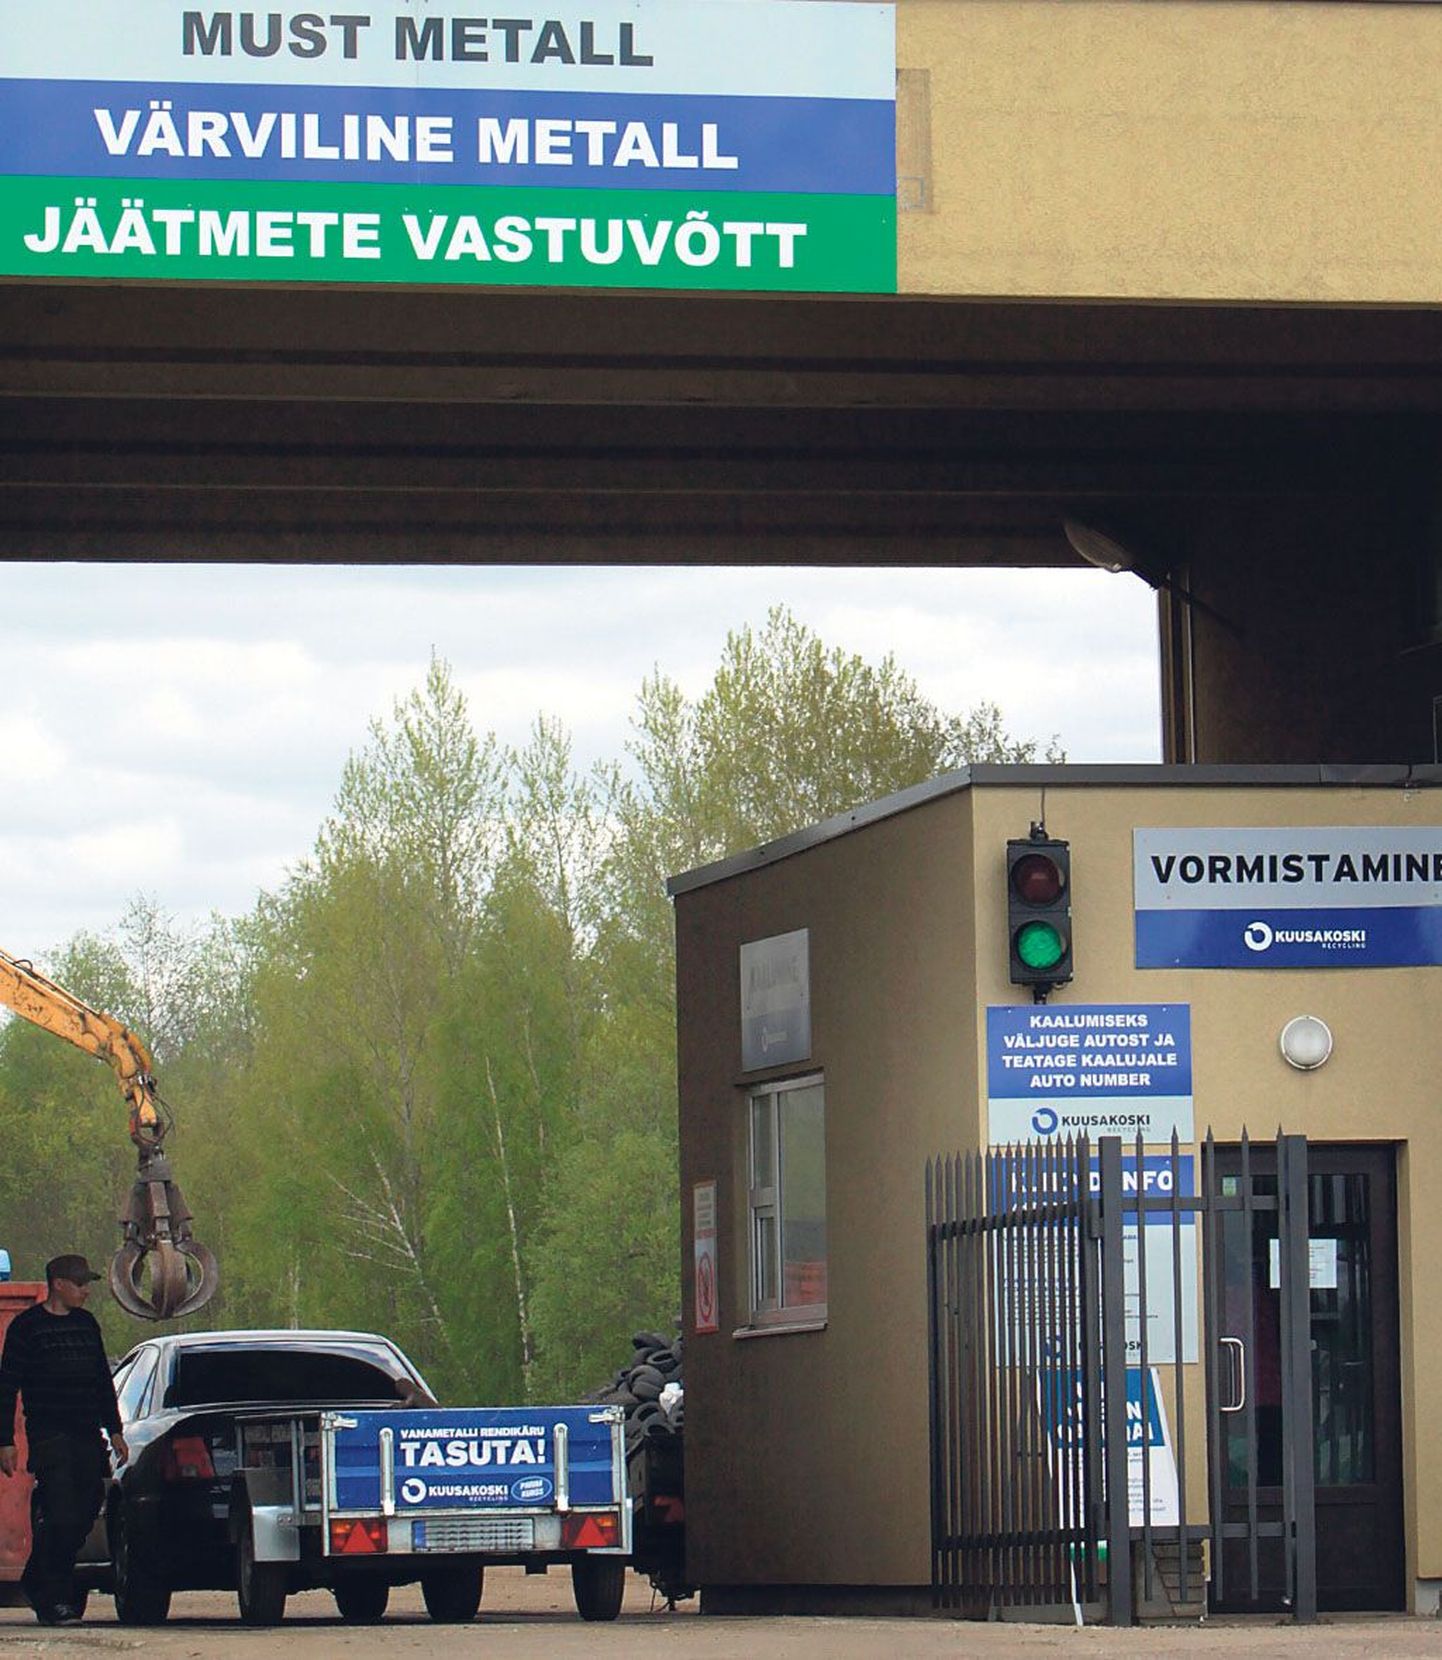 Kuusakoski Pärnu teeninduskeskusesse metalli viinud mees sai halva kohtlemise osaliseks. Foto on illsutreeriv.